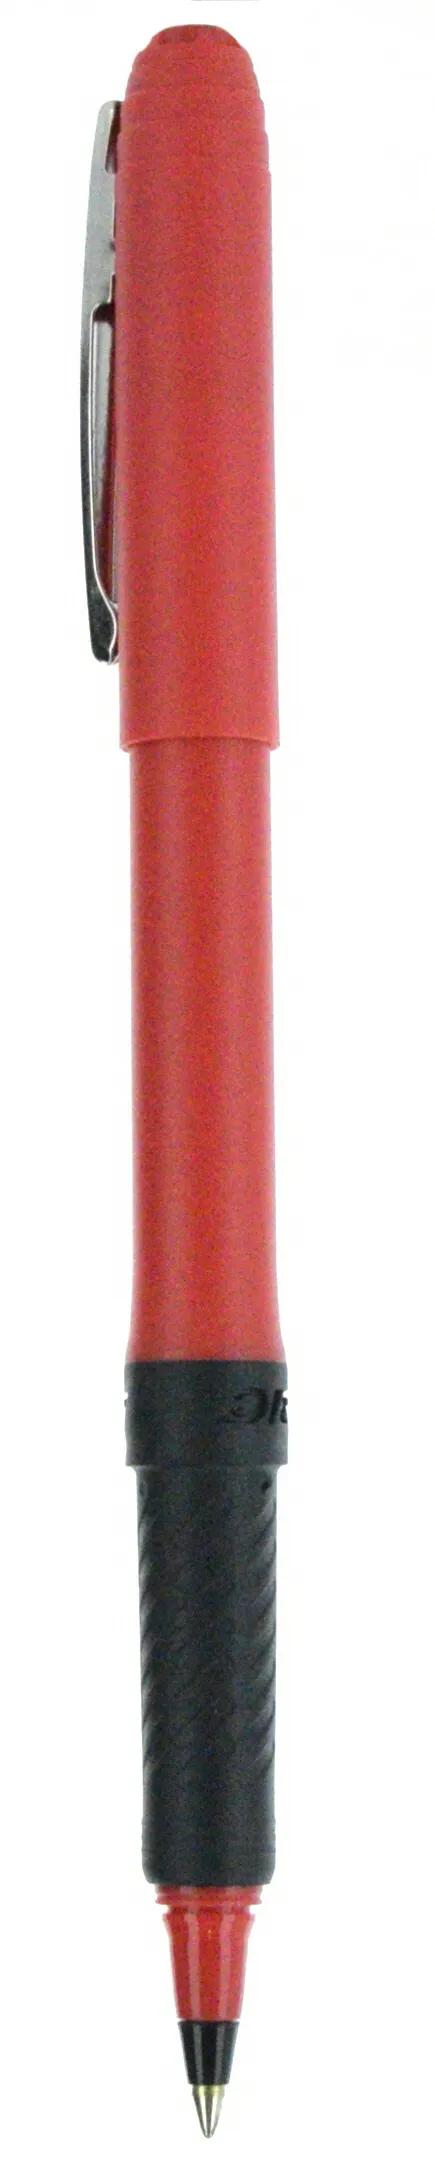 BIC® Grip Roller Pen 77 of 147